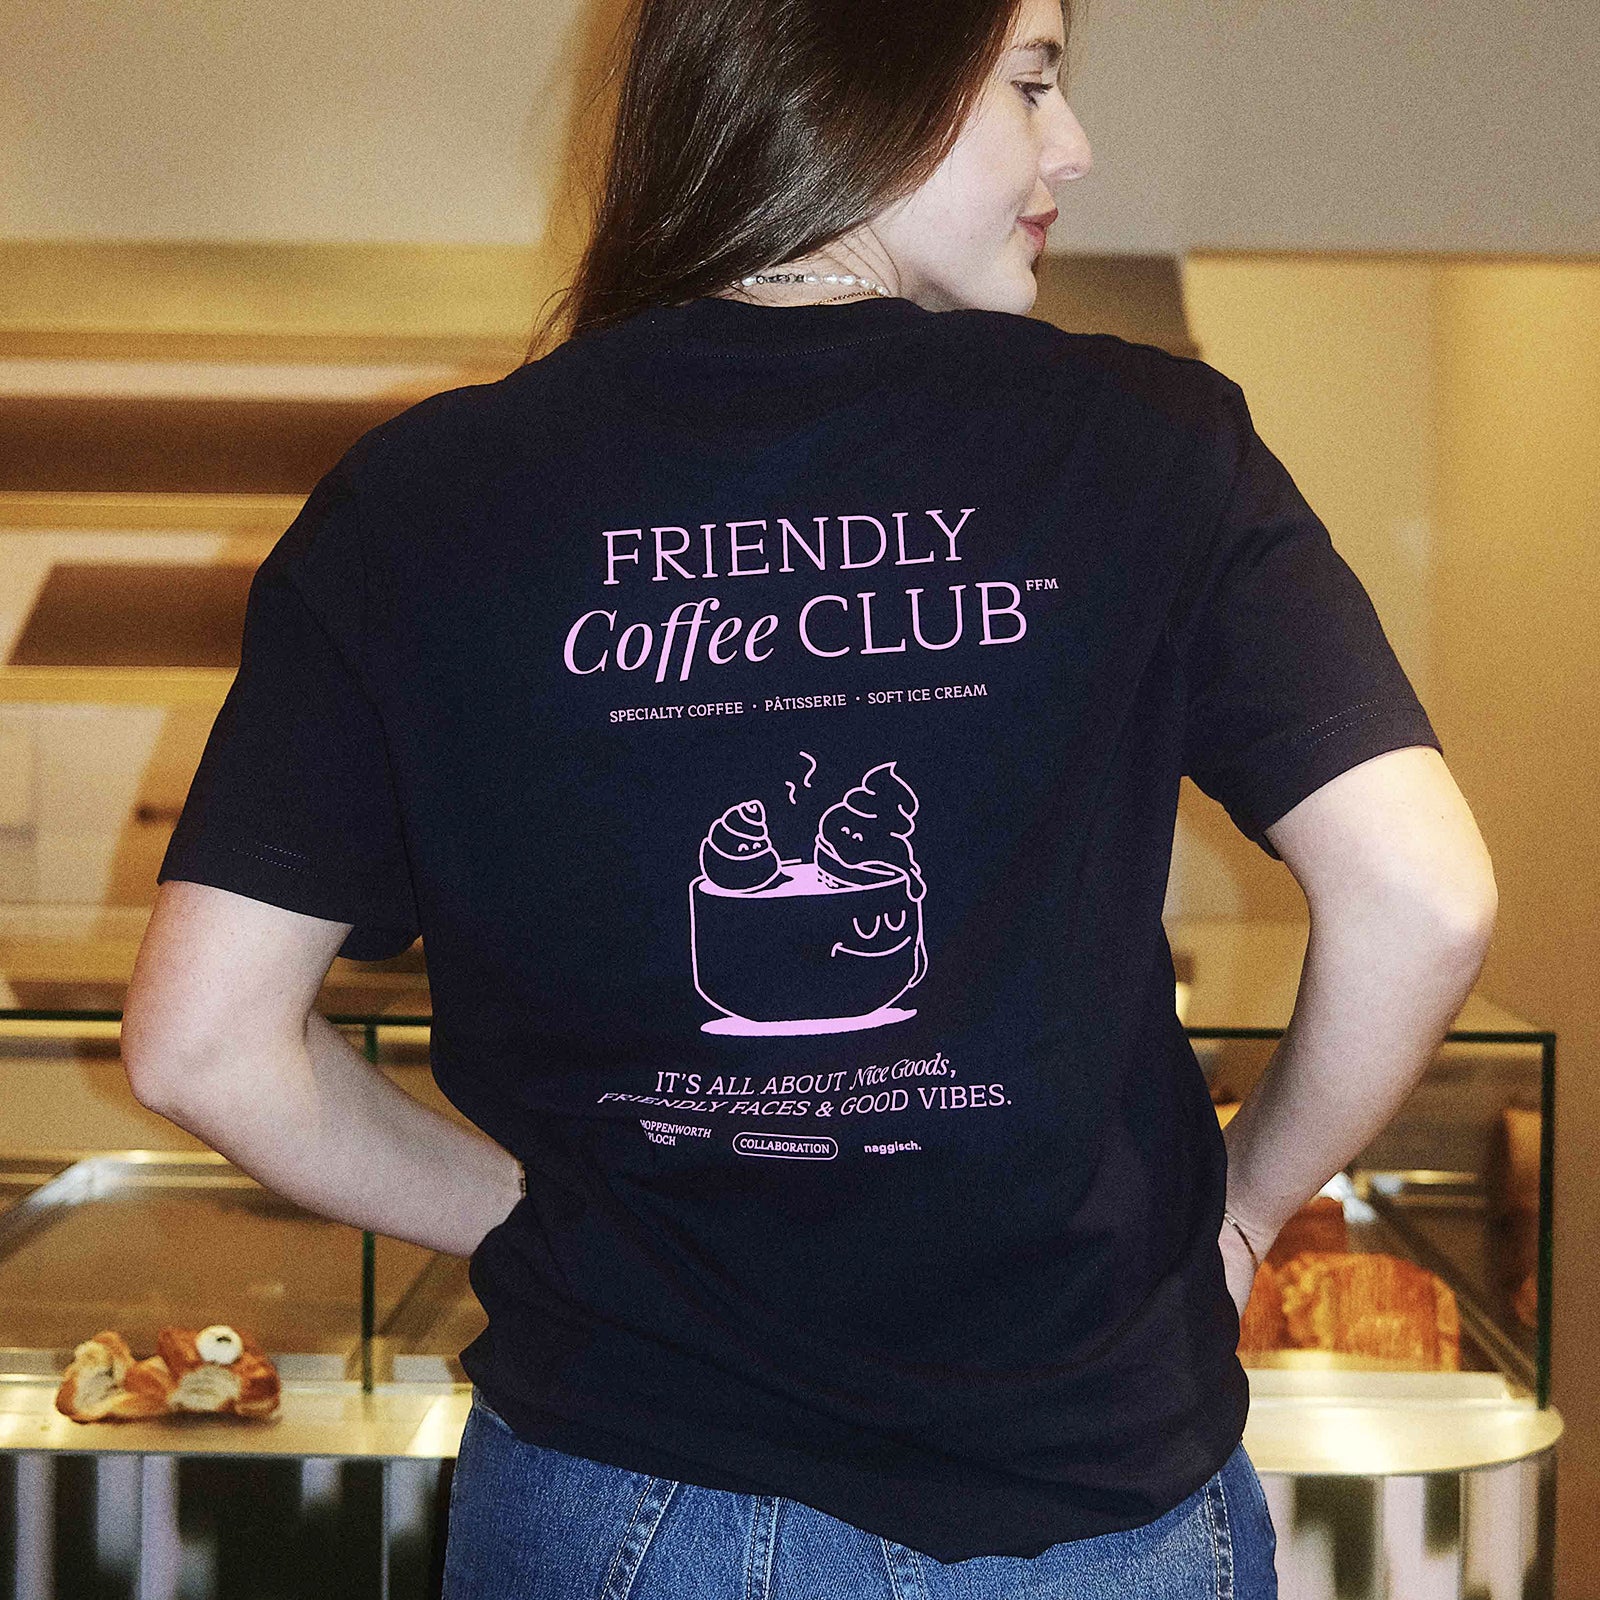 friendly coffee club. shirt